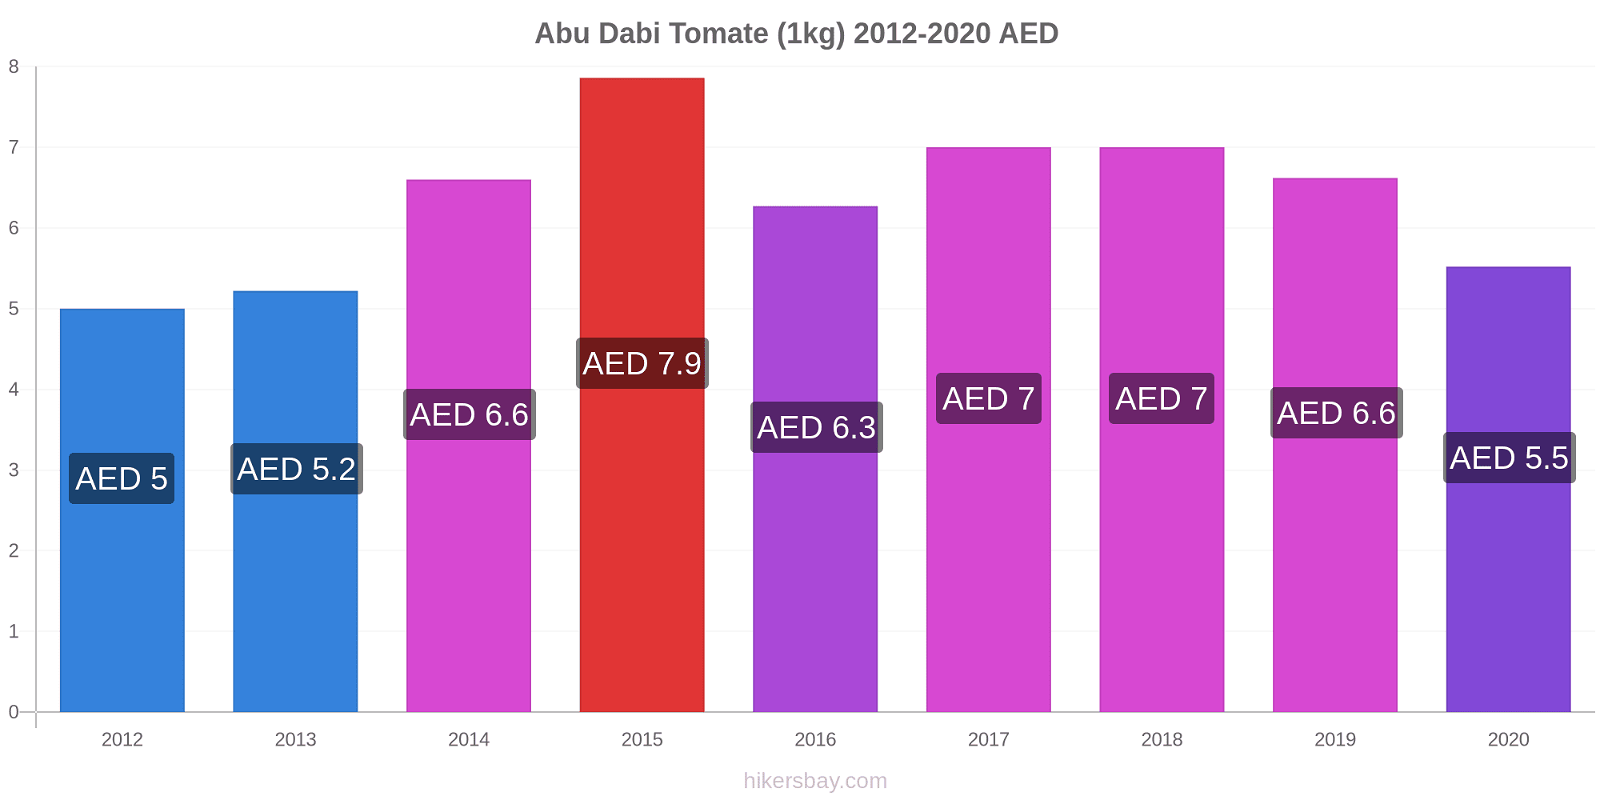 Abu Dabi cambios de precios Tomate (1kg) hikersbay.com